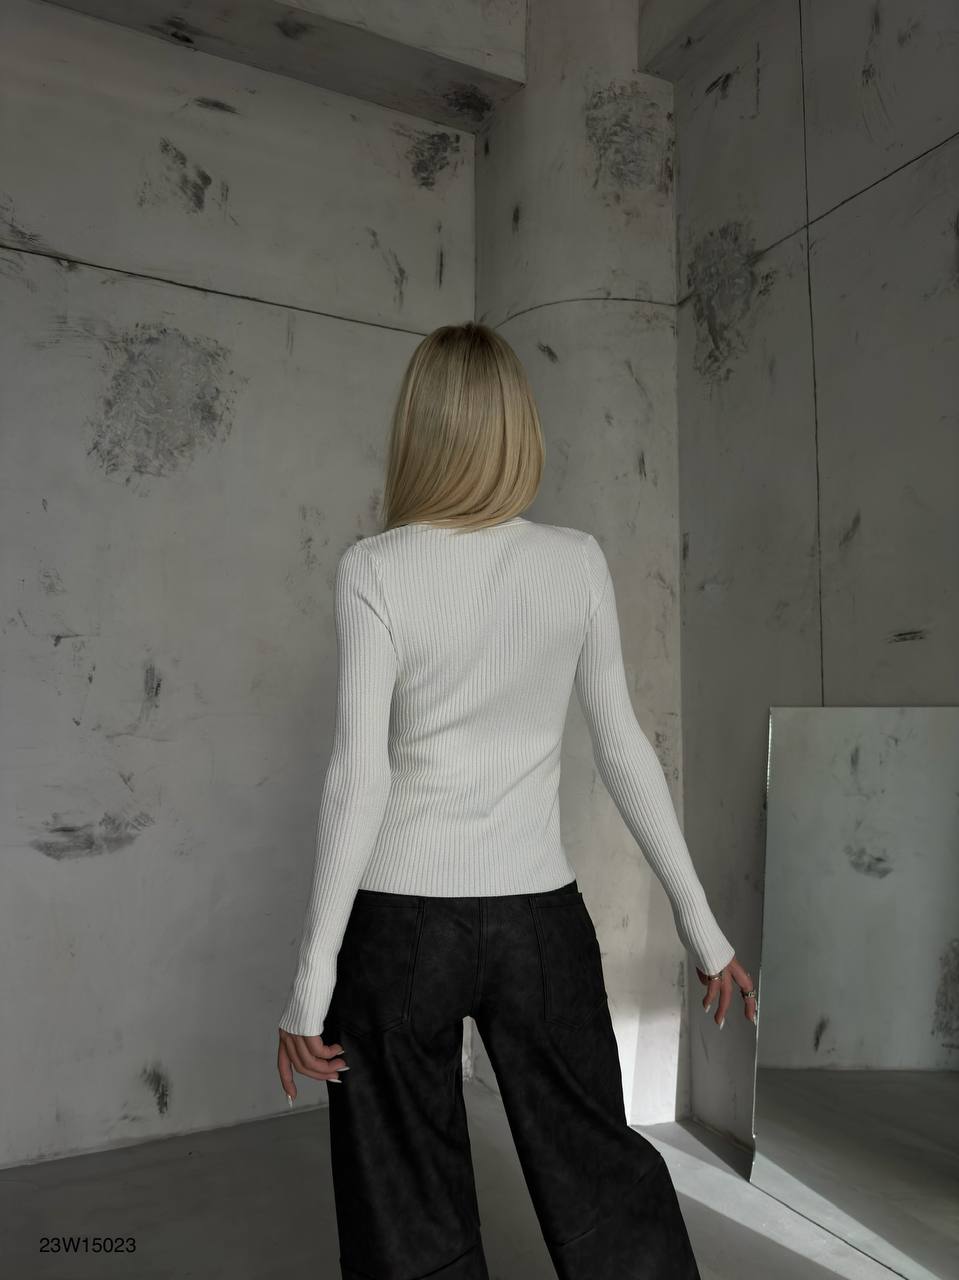 Дамска блуза Courtney White  https://bvseductive.com/products/дамска-блуза-courtney-white  стилна дамска блуза в бял цвят със секси акцент от цип по диагонал изработена от мека, приятна материя комфортен и лесно комбинативен модел със силует, който